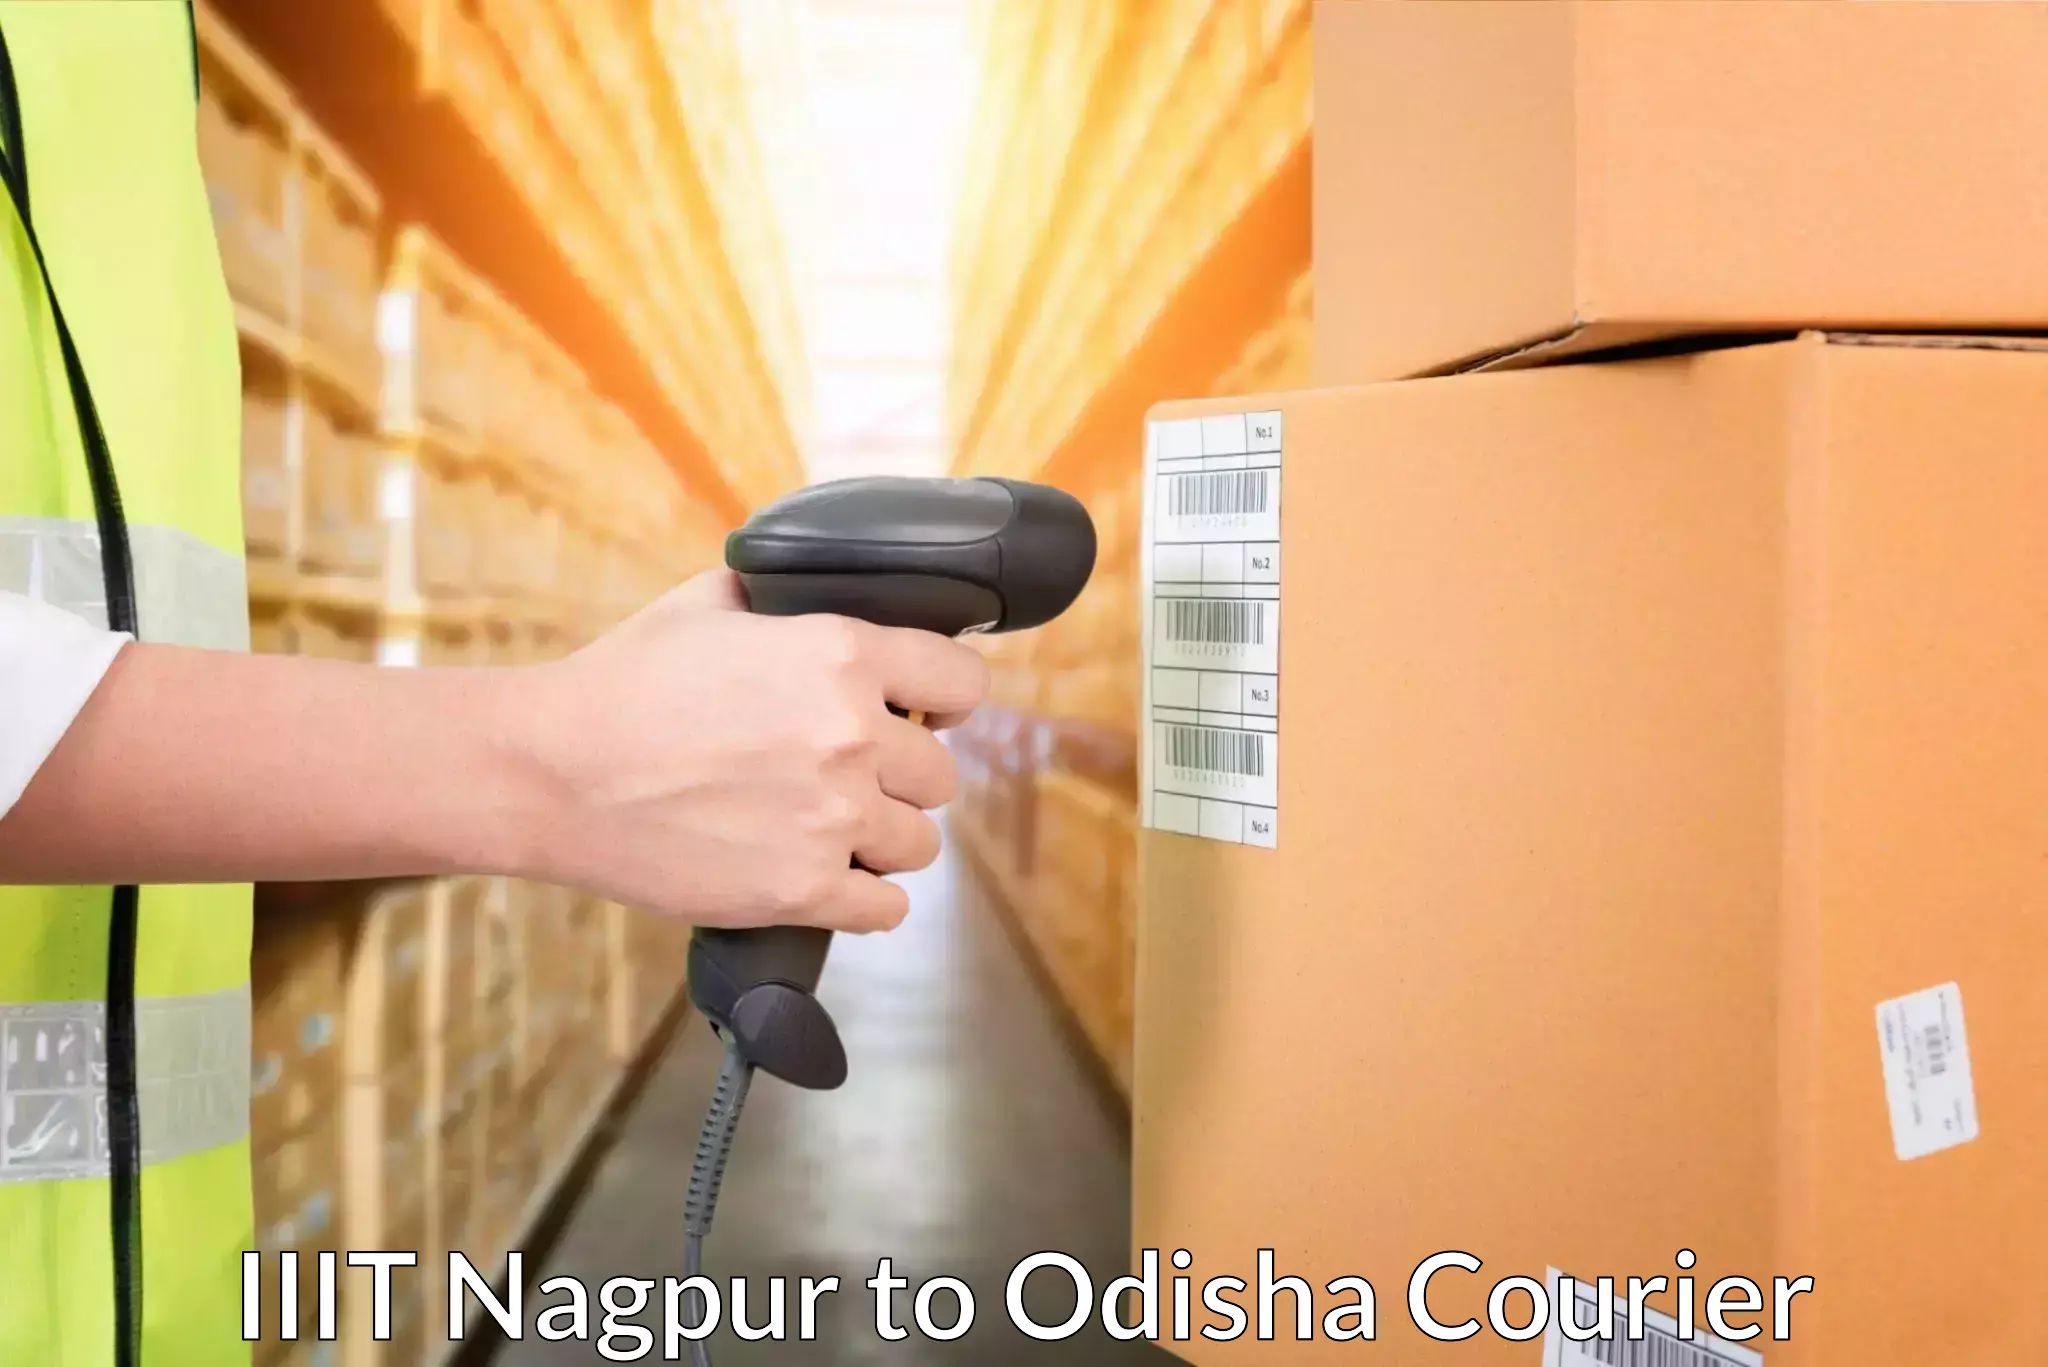 Global logistics network in IIIT Nagpur to Odisha